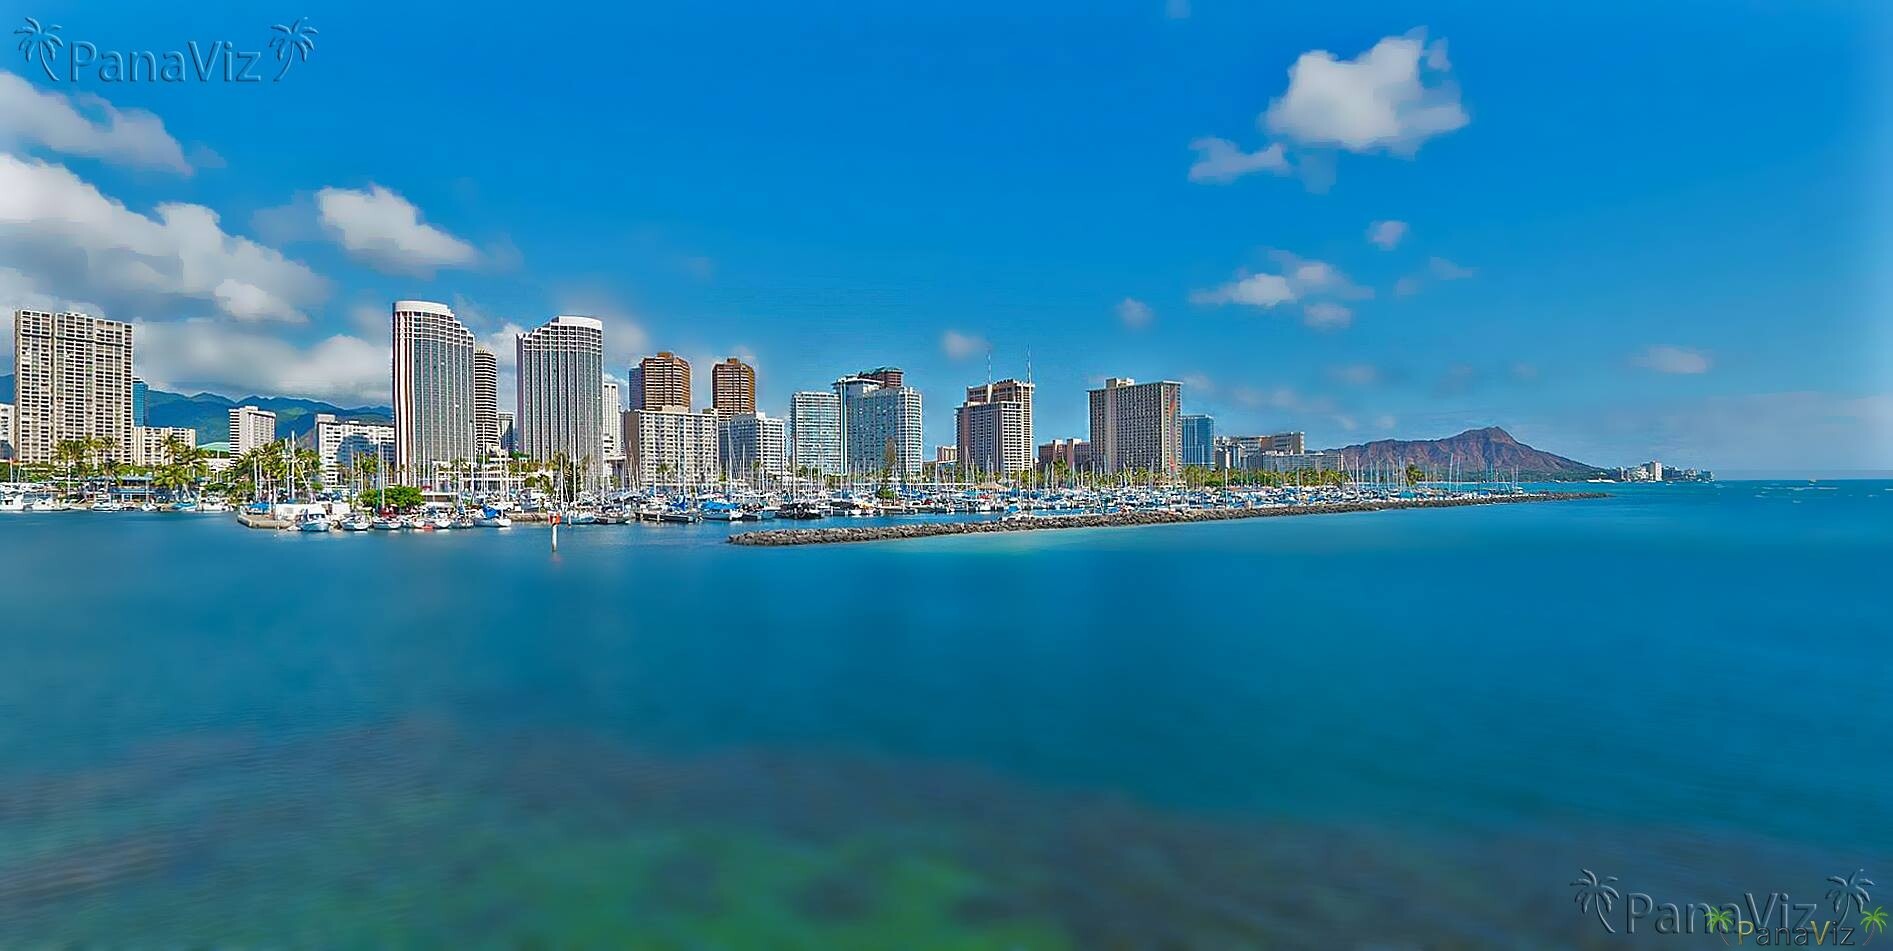 Waikiki as seen from Kaka’ako.